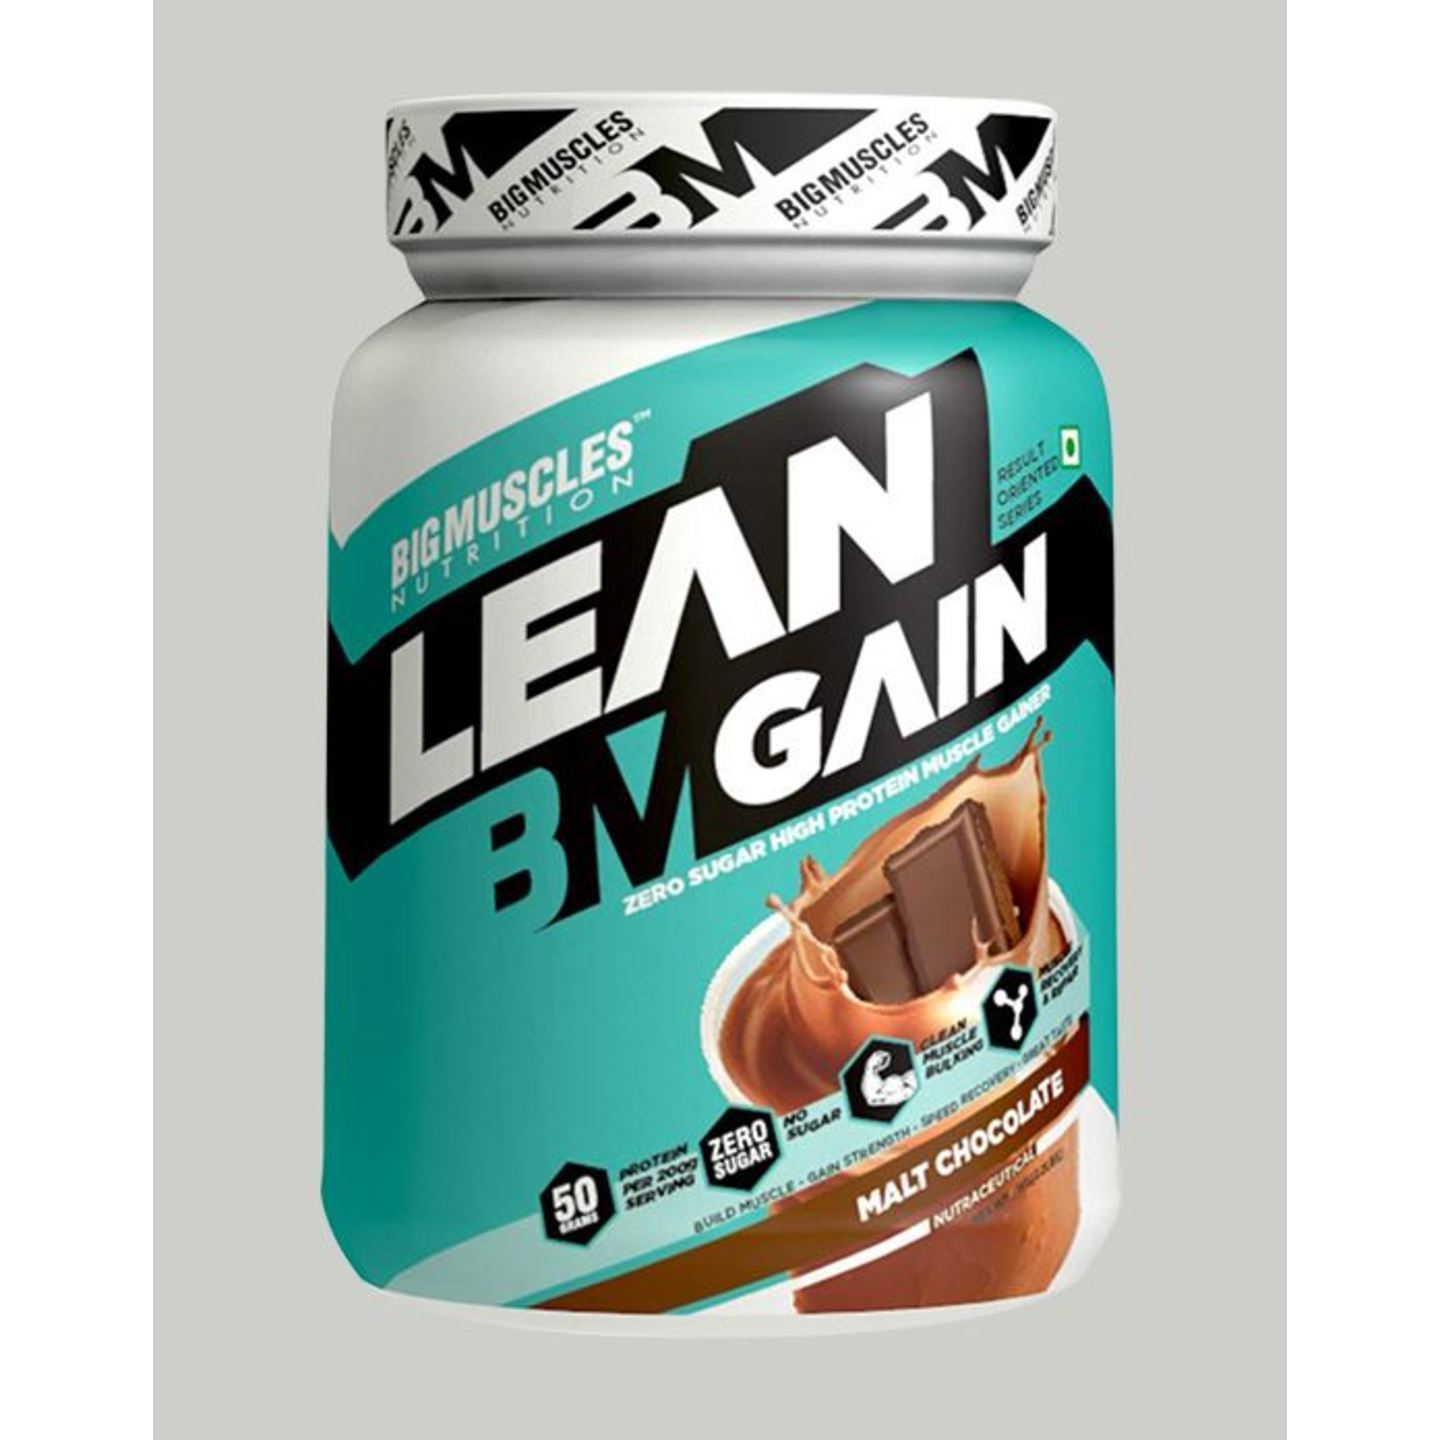 Bigmuscles Nutrition Lean Gain Malt Chocolate 2.2 lbs